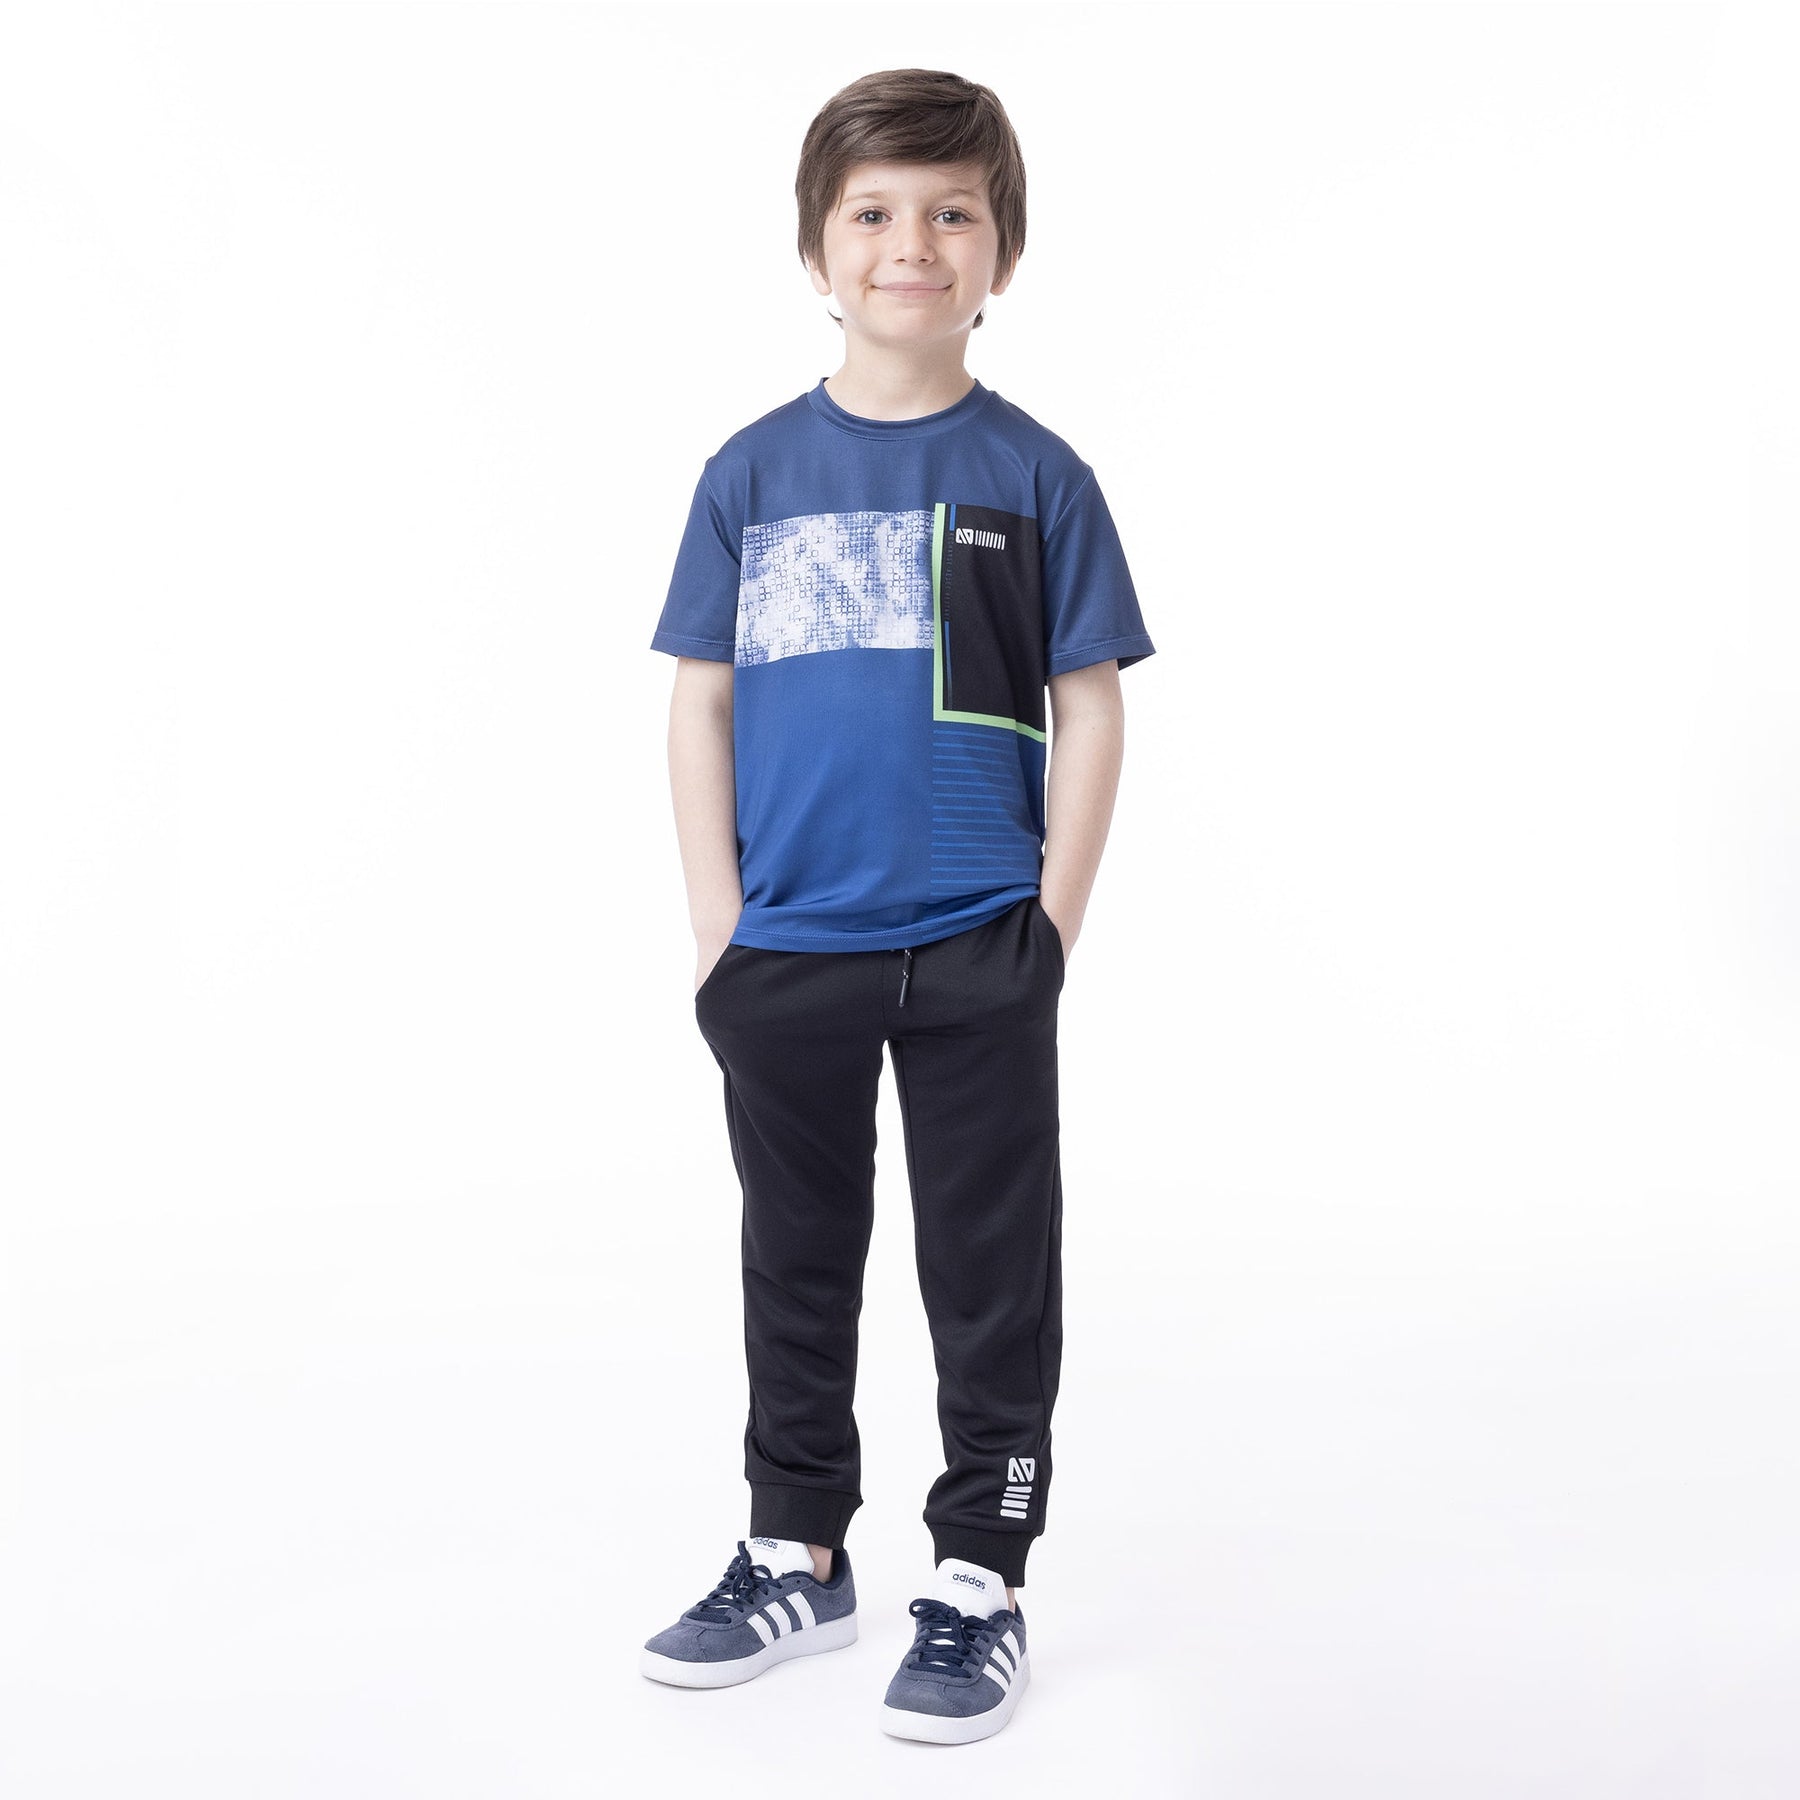 T-shirt athlétique pour enfant garçon par Nanö | F23A81-02 Marine | Boutique Flos, vêtements mode pour bébés et enfants